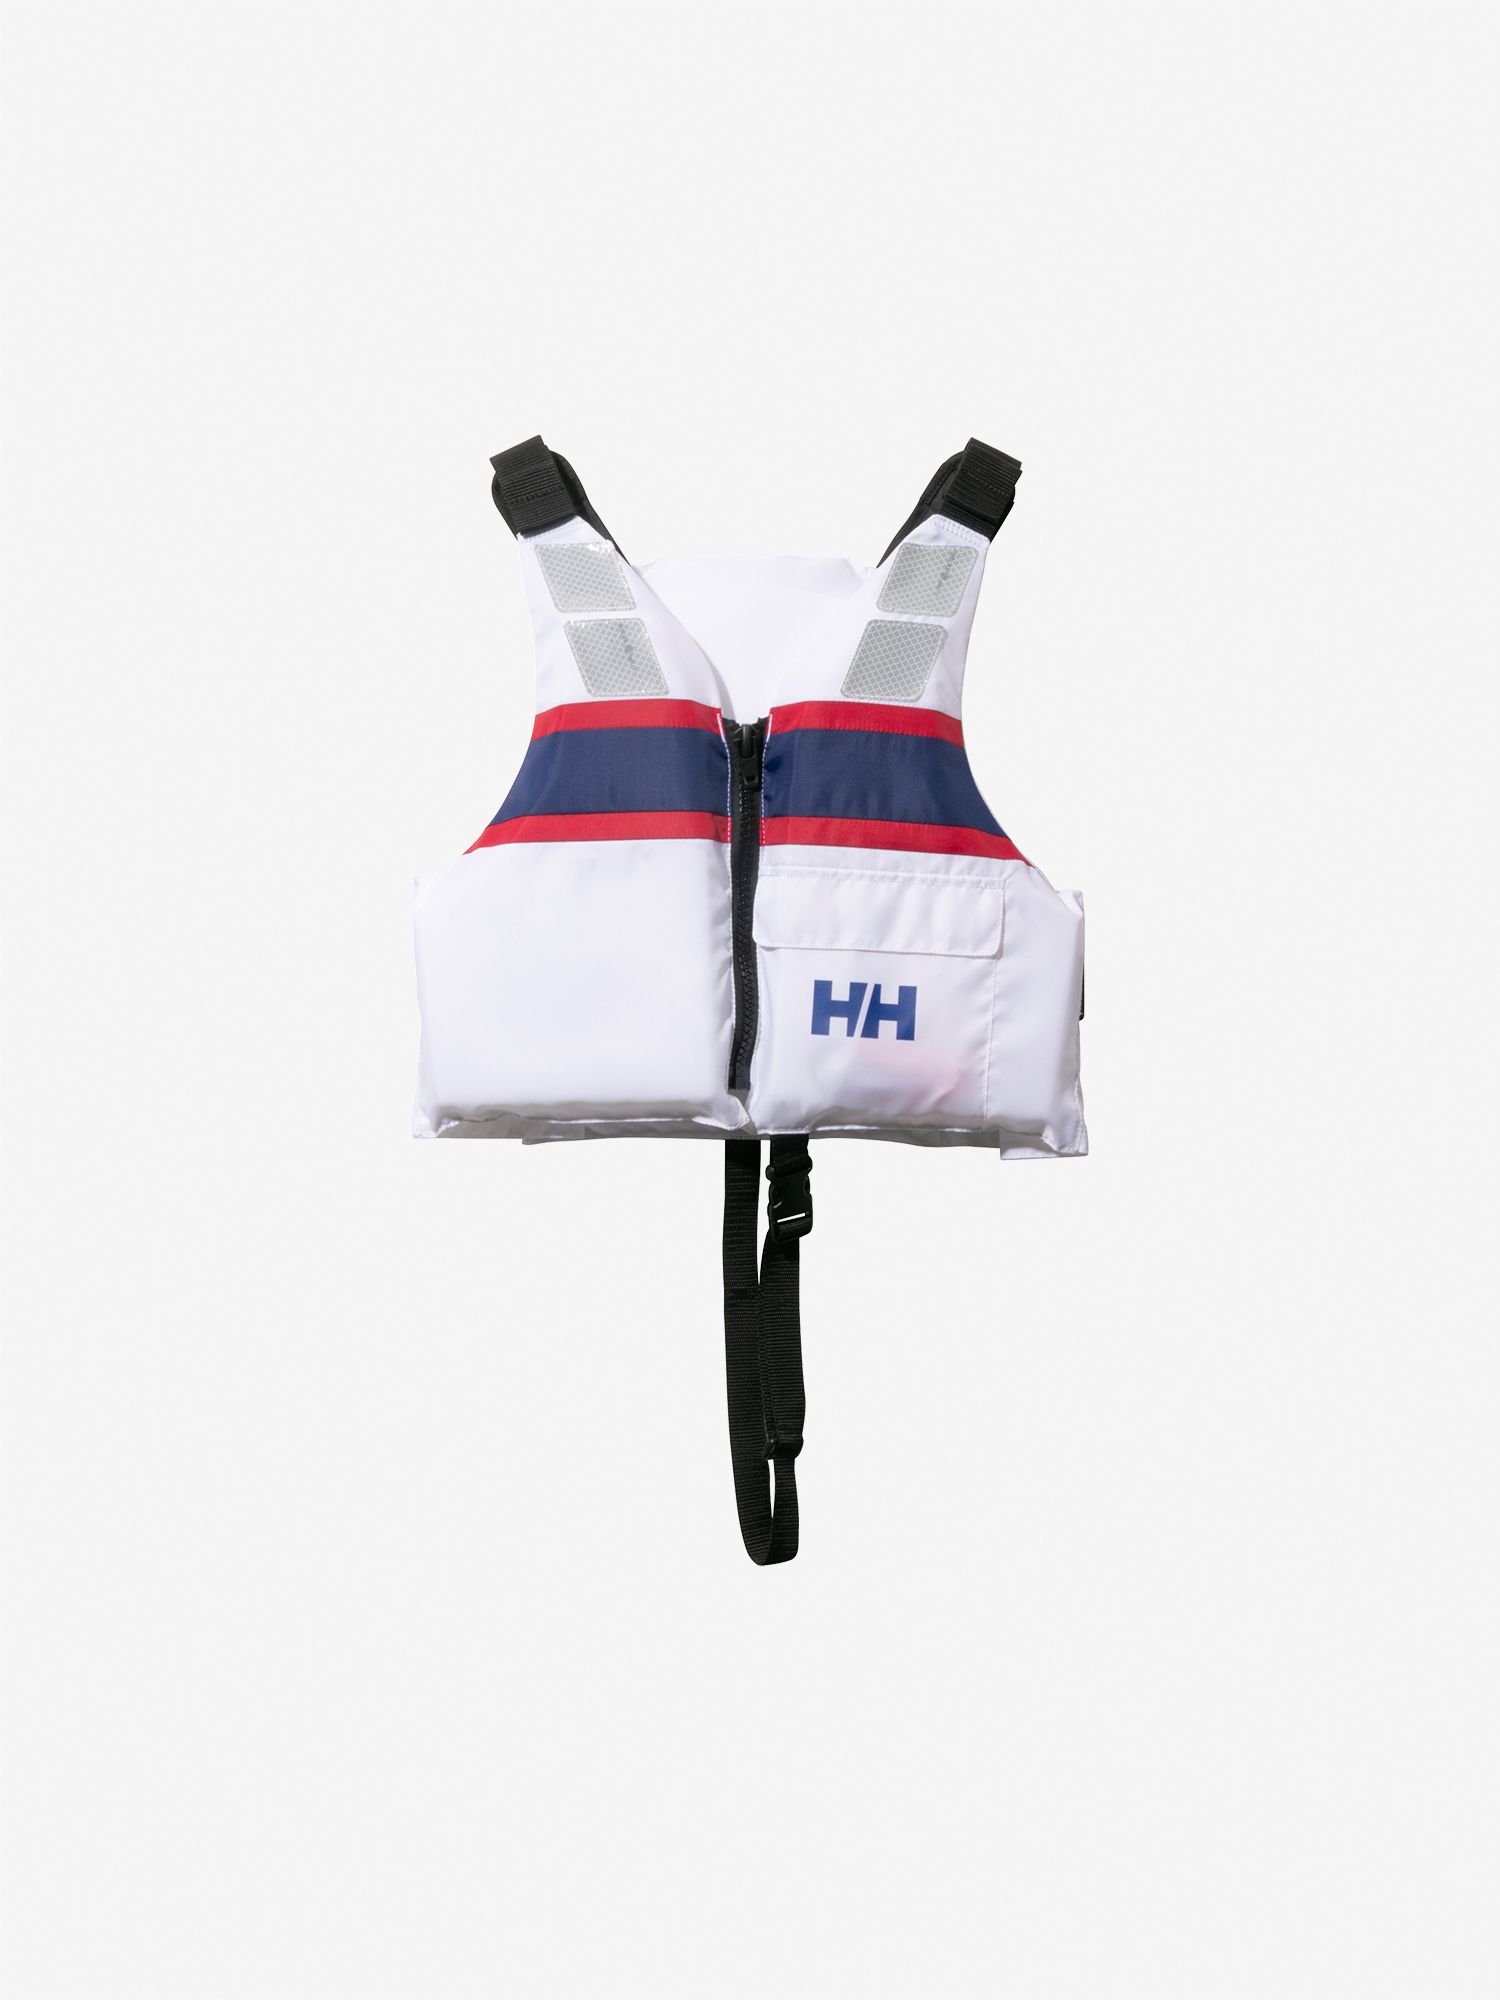 ヘリーライフジャケット(キッズ)（HJ81640）- HELLY HANSEN公式通販